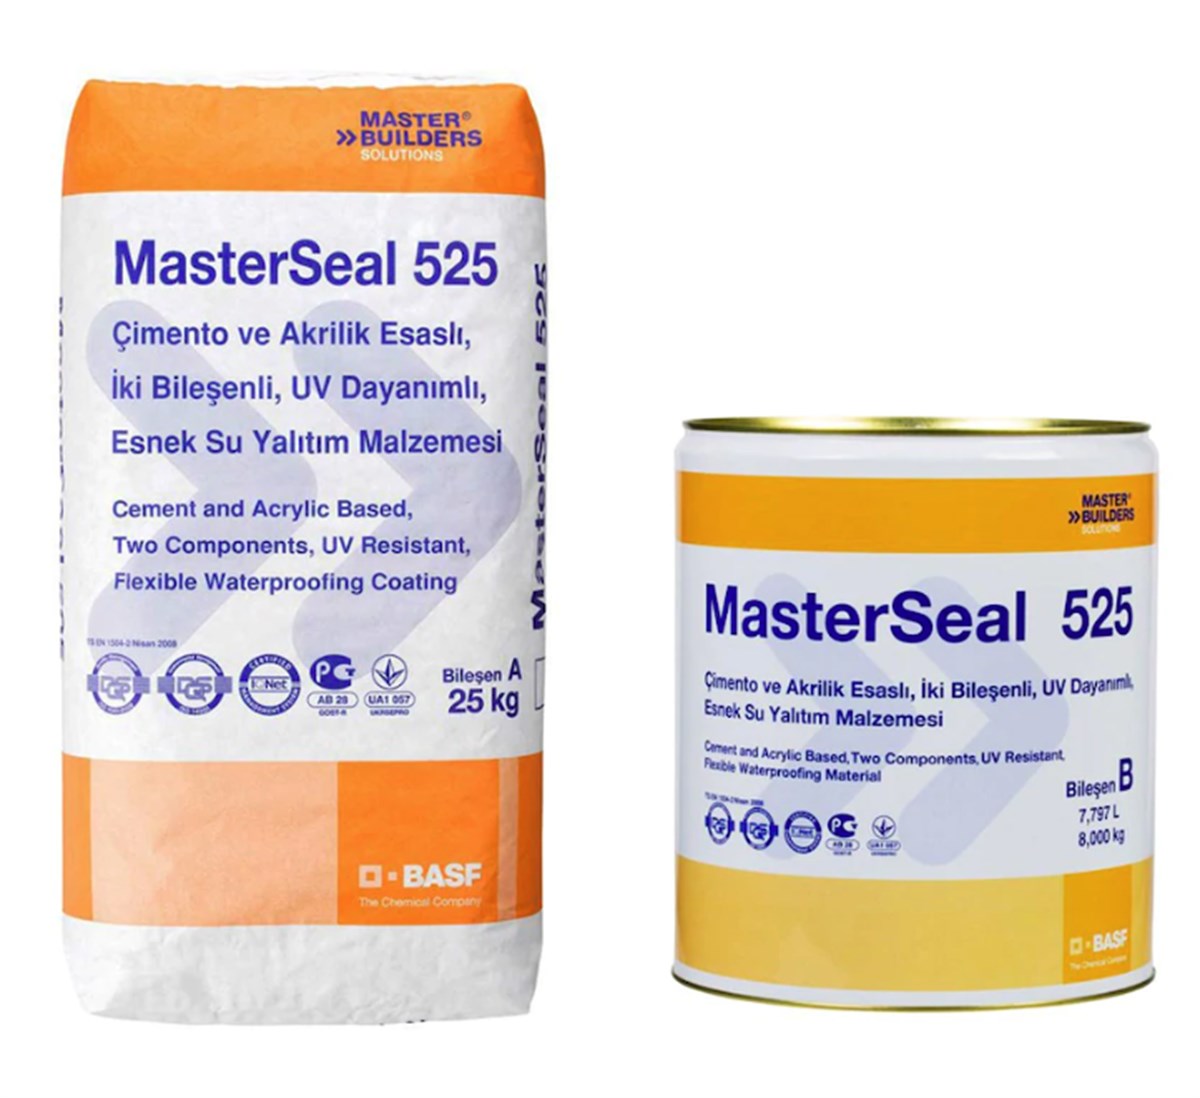 Masterseal 525 İki Bileşenli, UV Dayanımlı, Esnek Su Yalıtım Malzemesi 33 kg